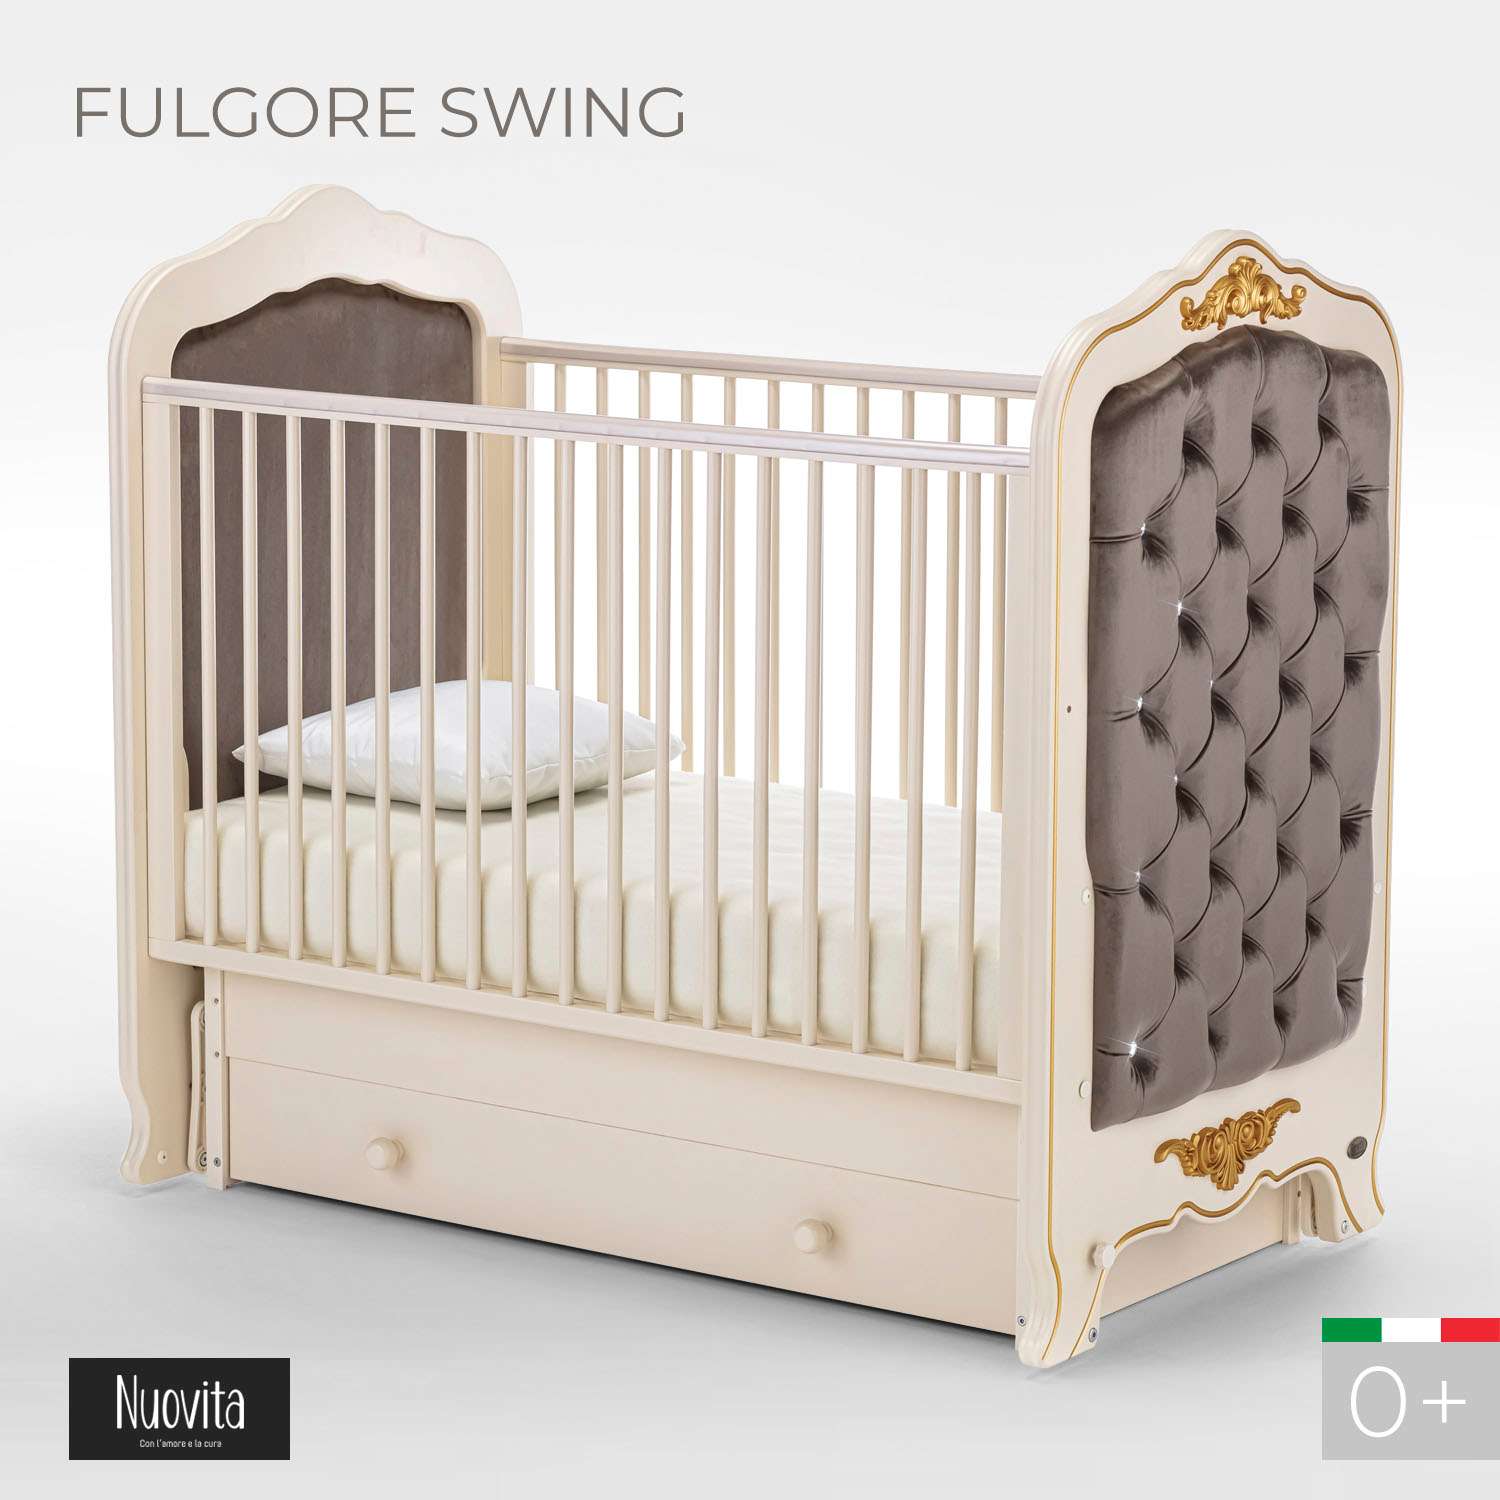 Детская кроватка Nuovita Fulgore Swing прямоугольная, поперечный маятник (слоновая кость) - фото 2